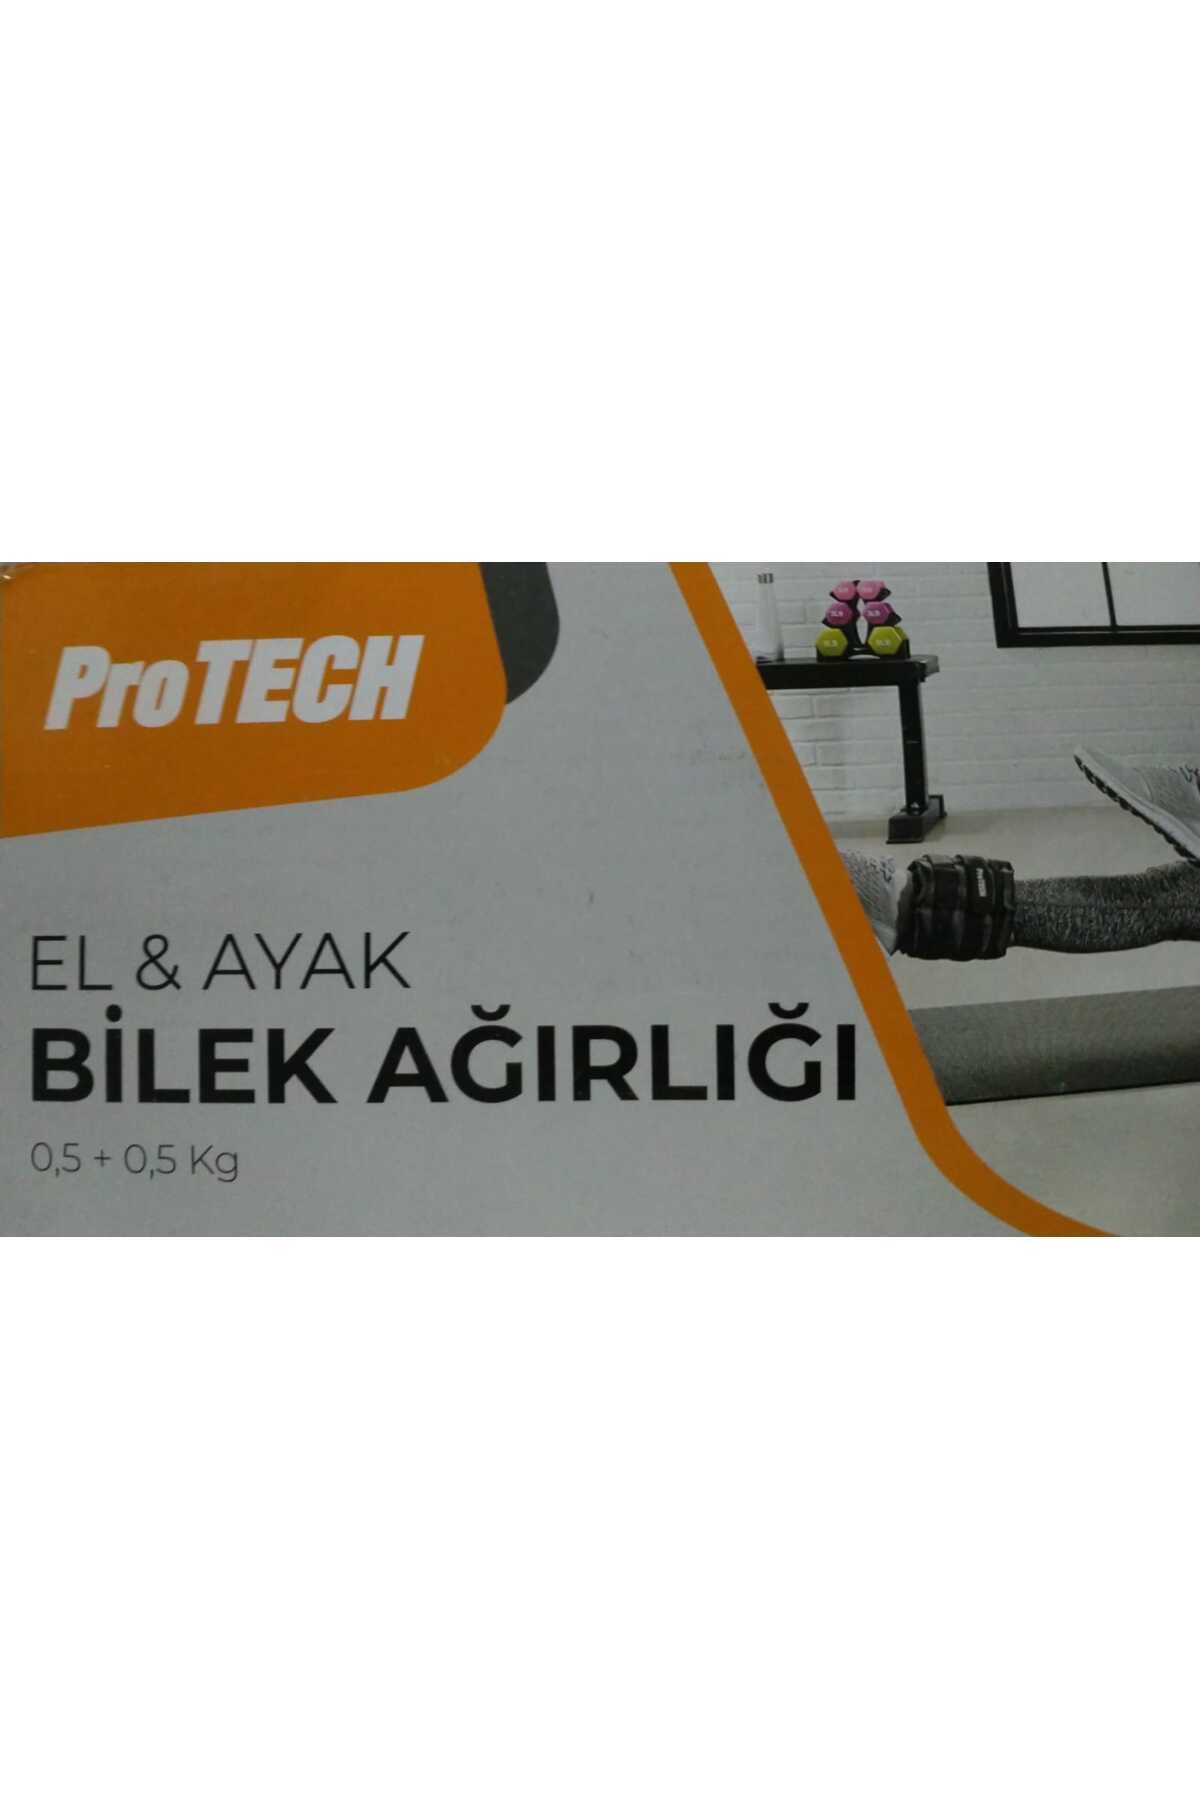 Protech El&ayak Bilek Ağırlığı 0,5 + 0,5 Kg